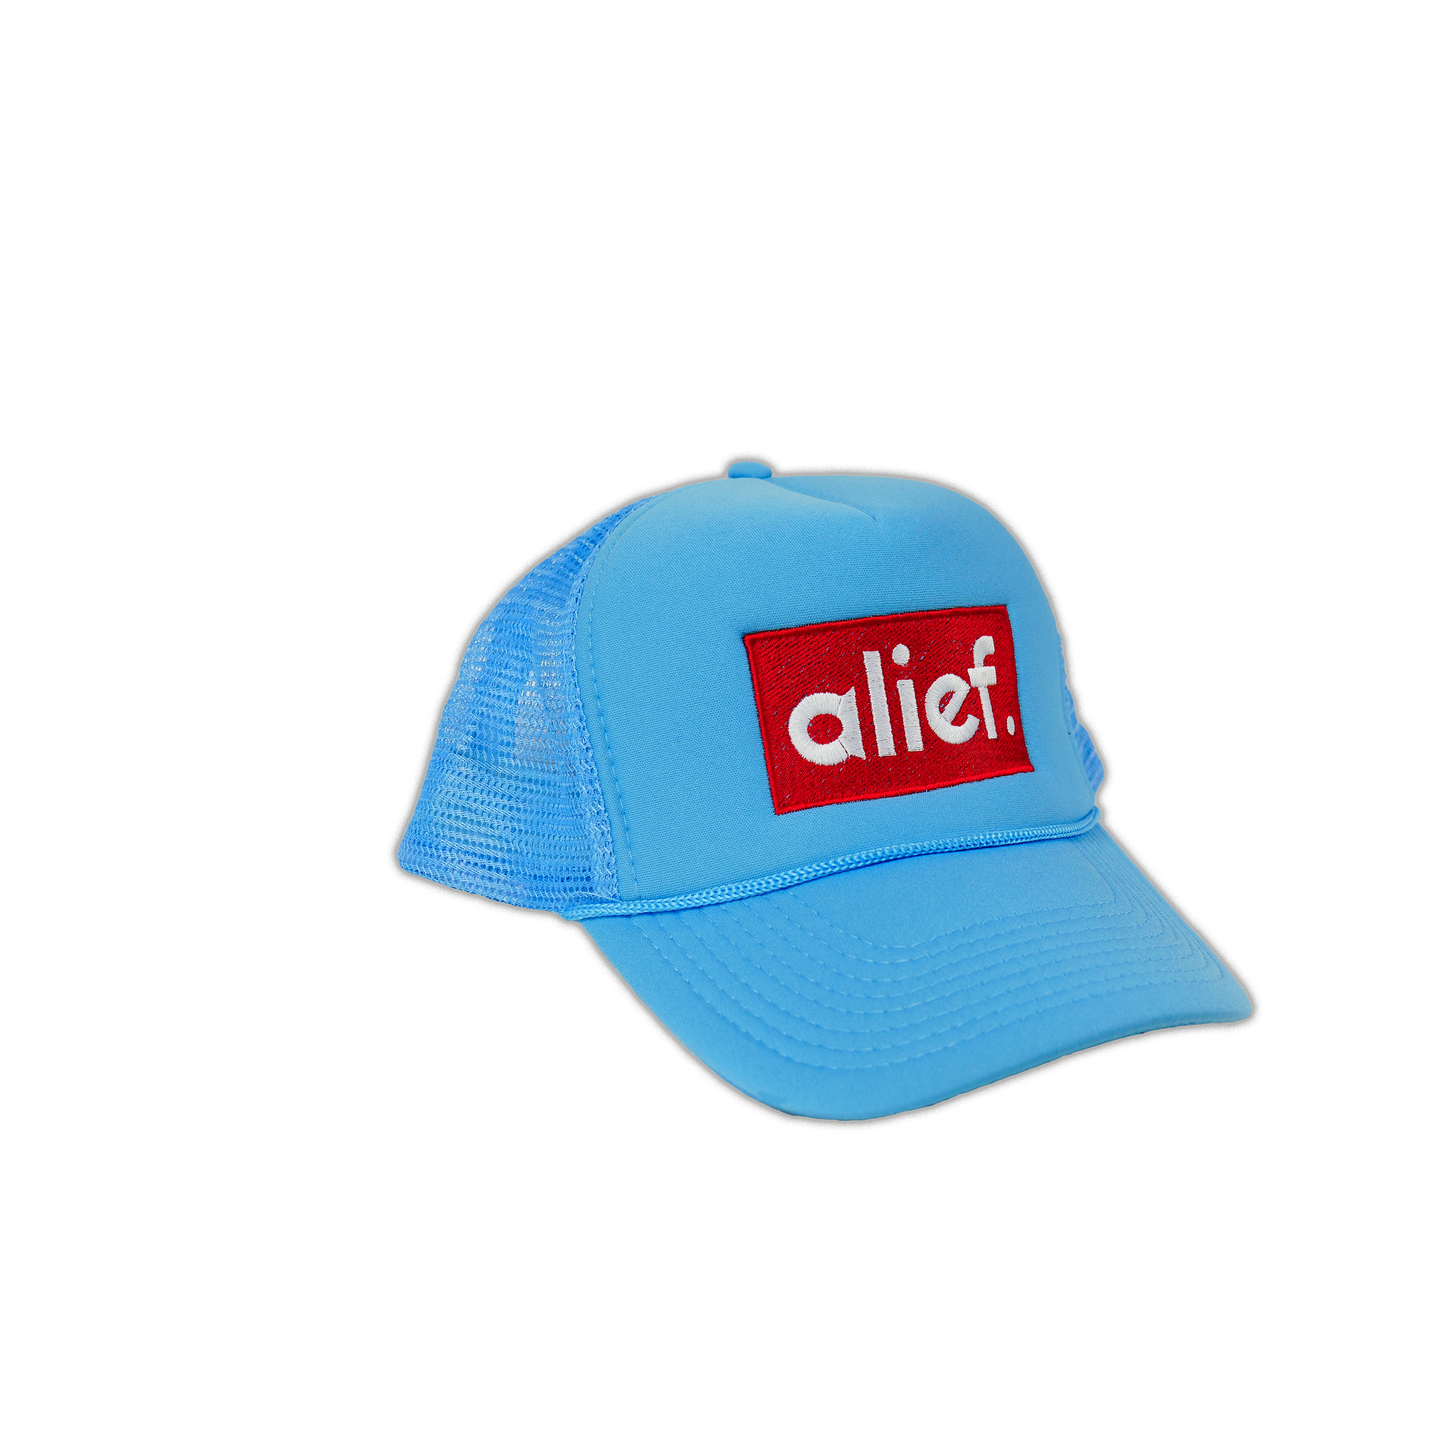 Alief Red Box Trucker Hat - Sky Blue